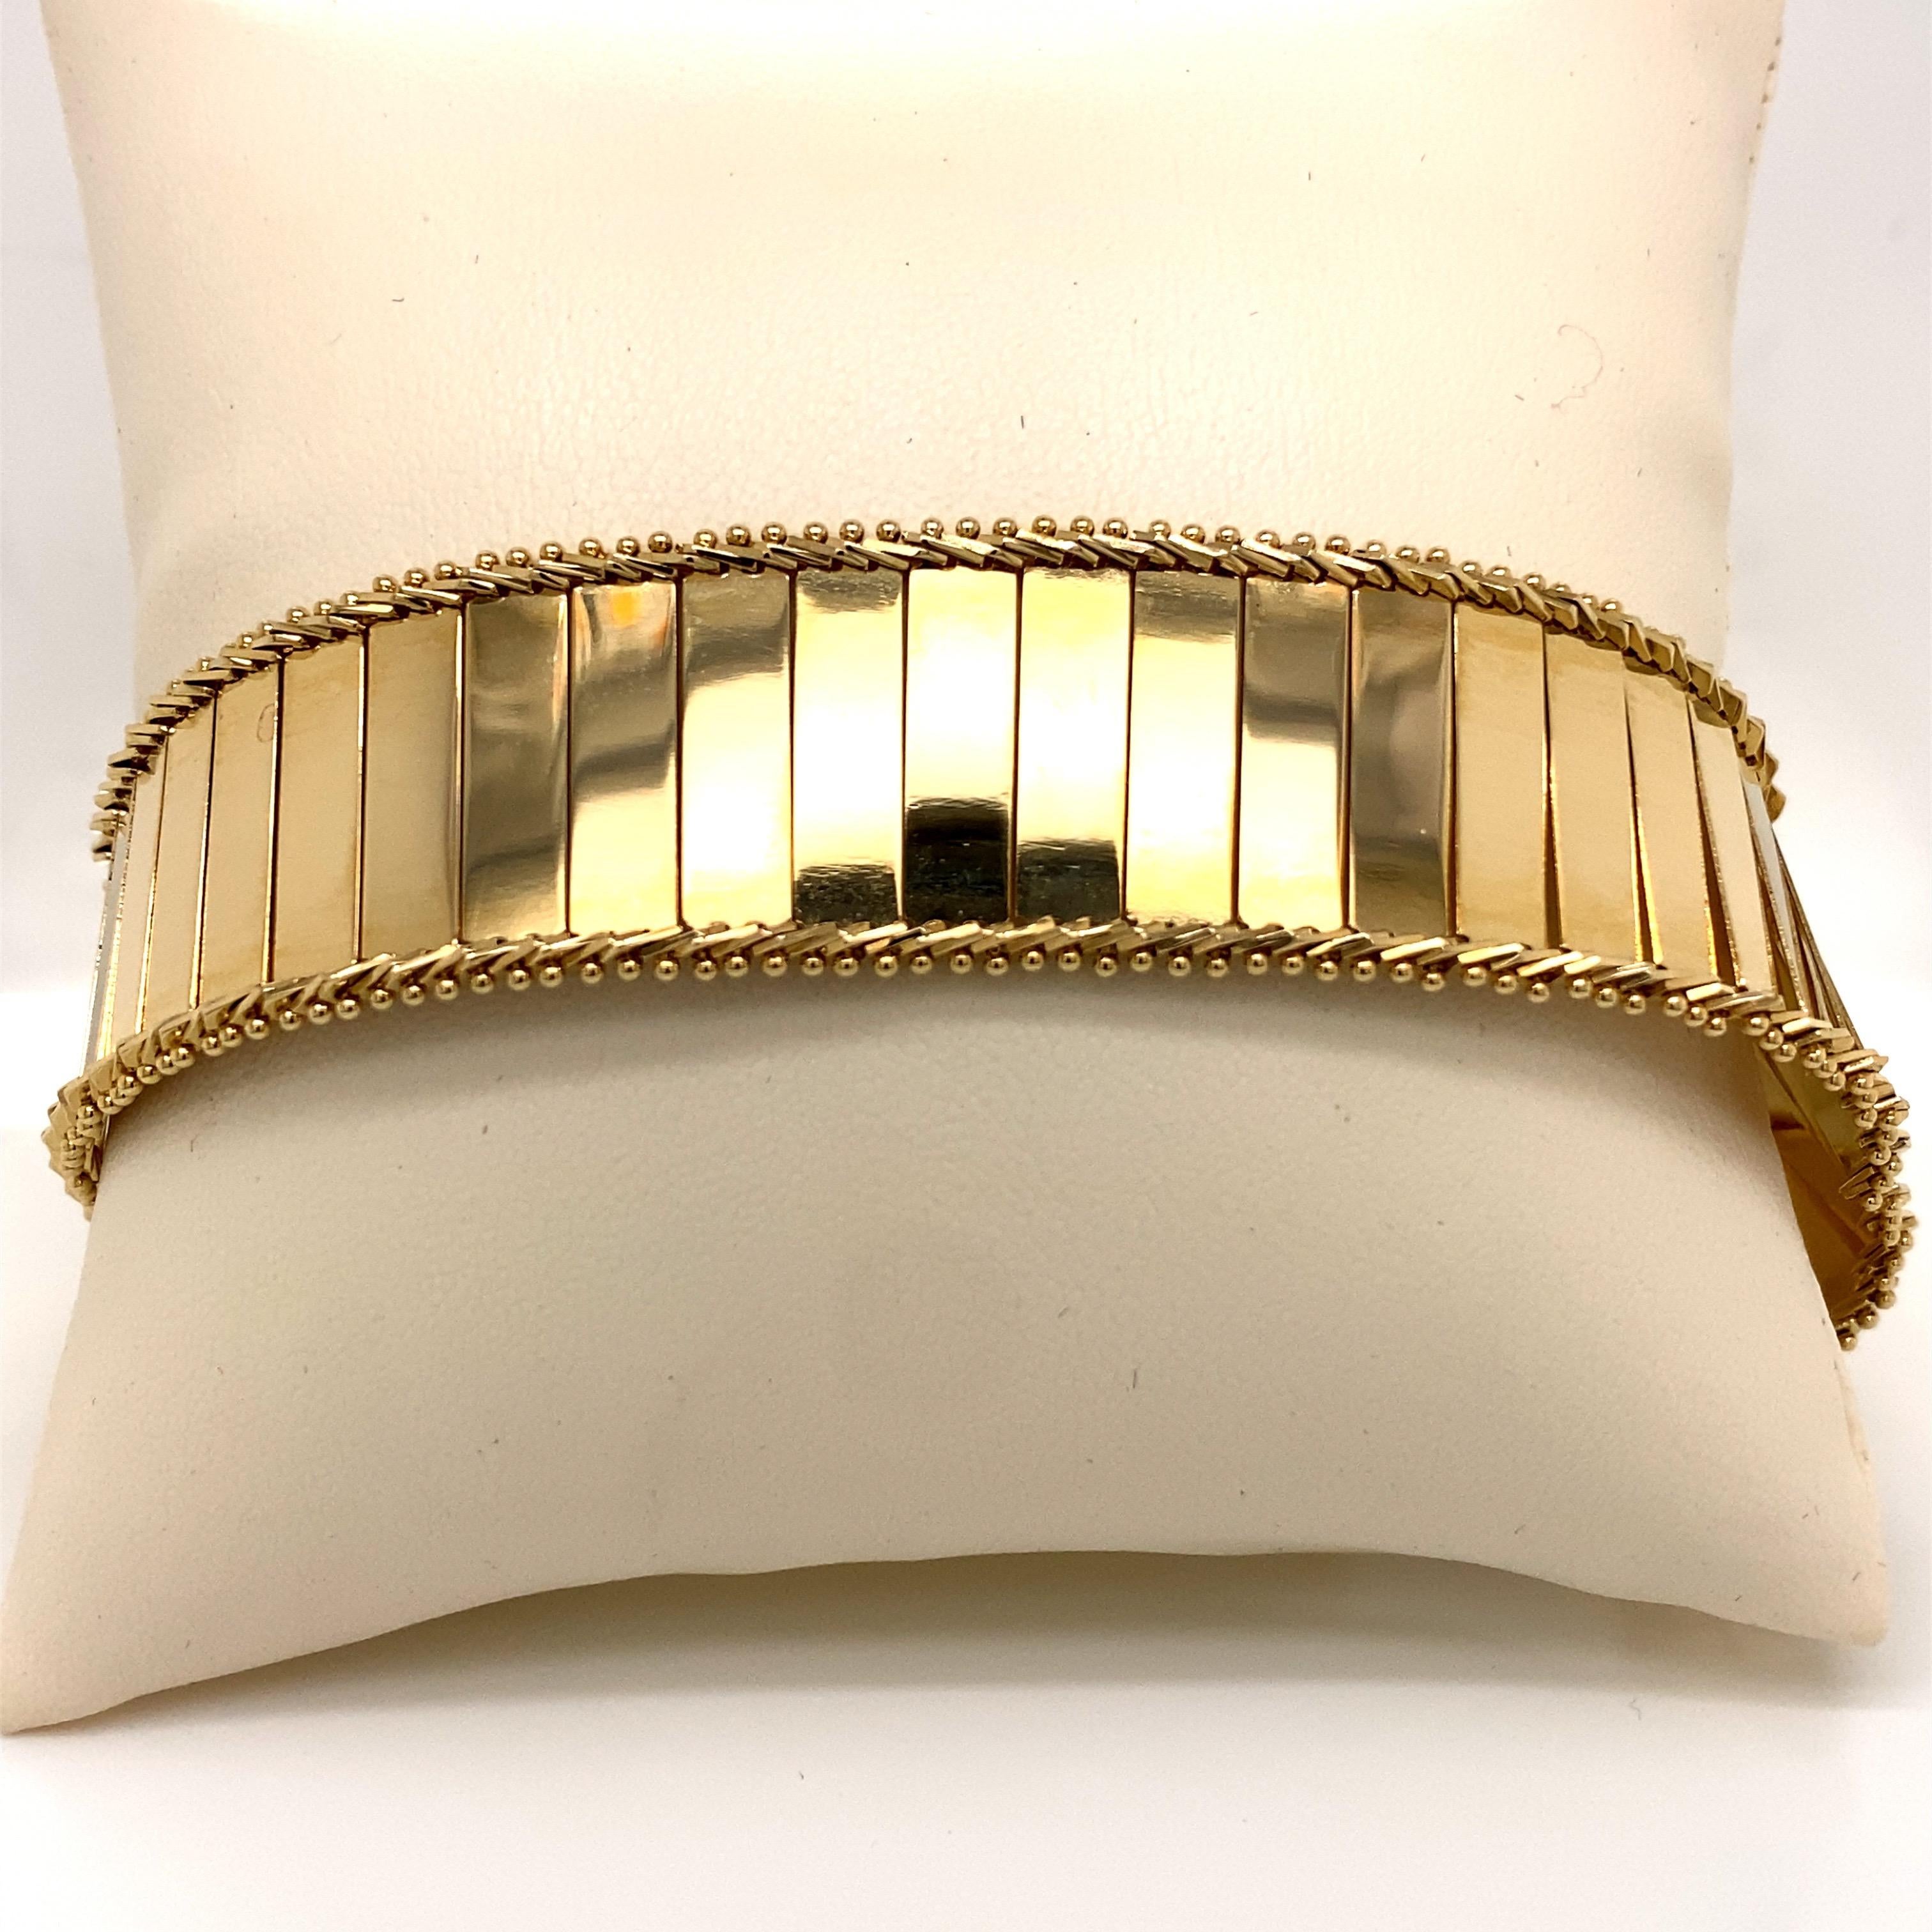 Vintage 1980s 14K Yellow Gold Wide Mirror Finish Link Bracelet - Das Armband misst 7 Zoll lang und .75 Zoll breit. Das Armband ist mit einer Fuchsbandeinfassung versehen und wiegt 24,6 Gramm.